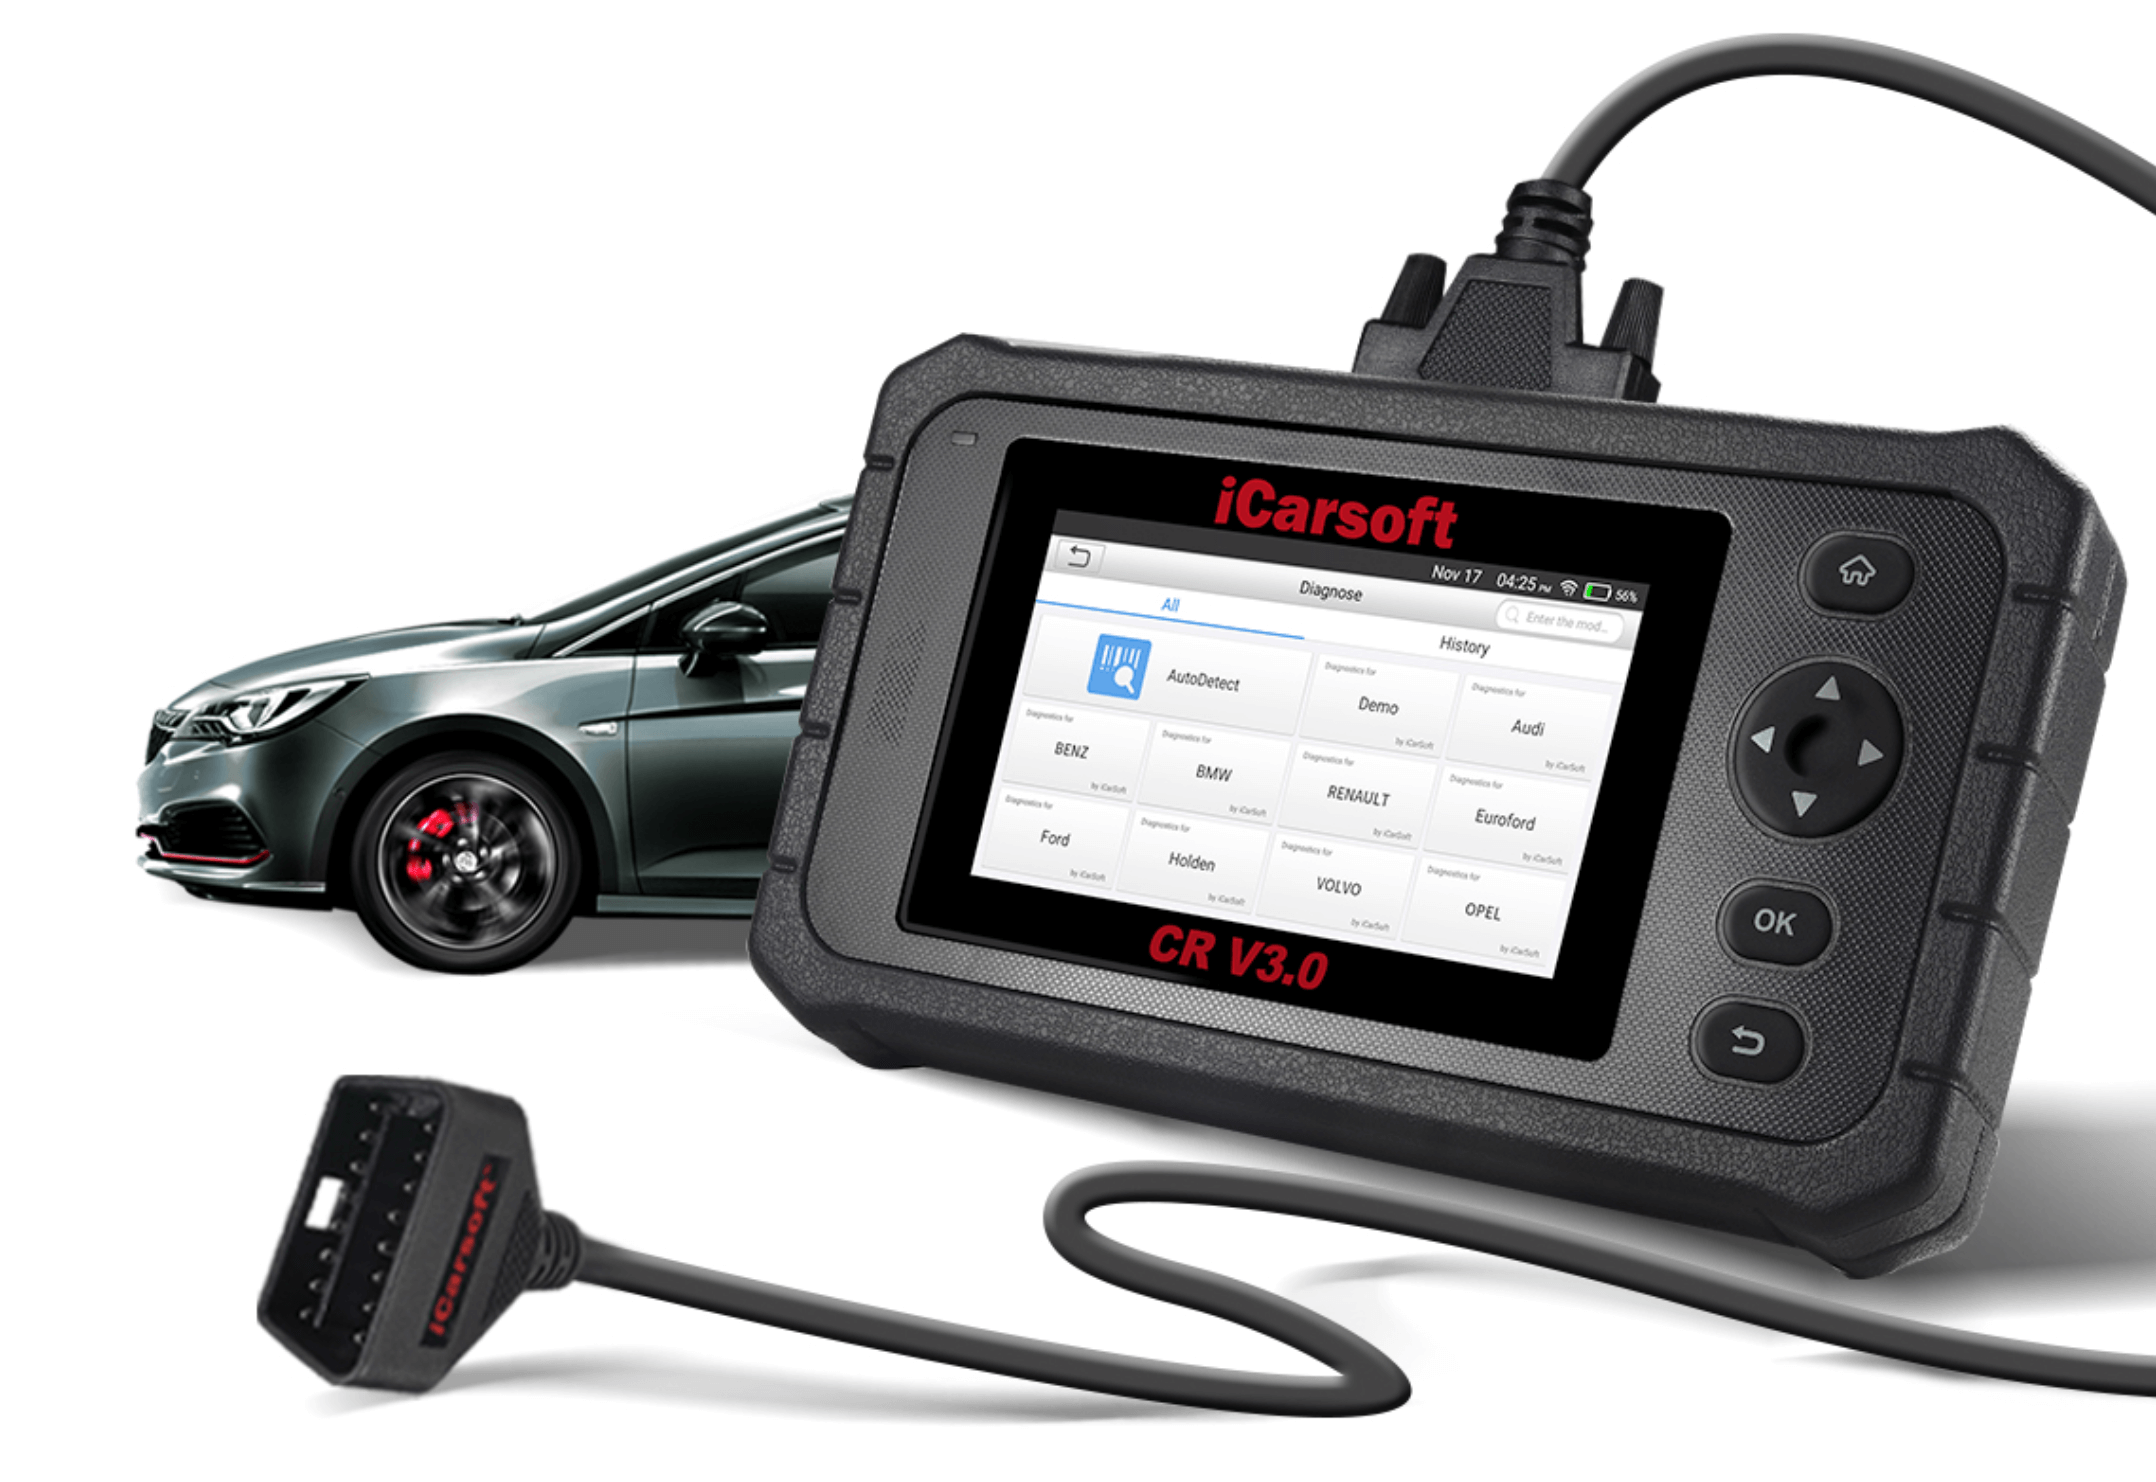 ICarsoft CR Max - Valise Diagnostic Automobile Multimarques en Français  Scanner Diag Auto OBD2 - Équipement auto